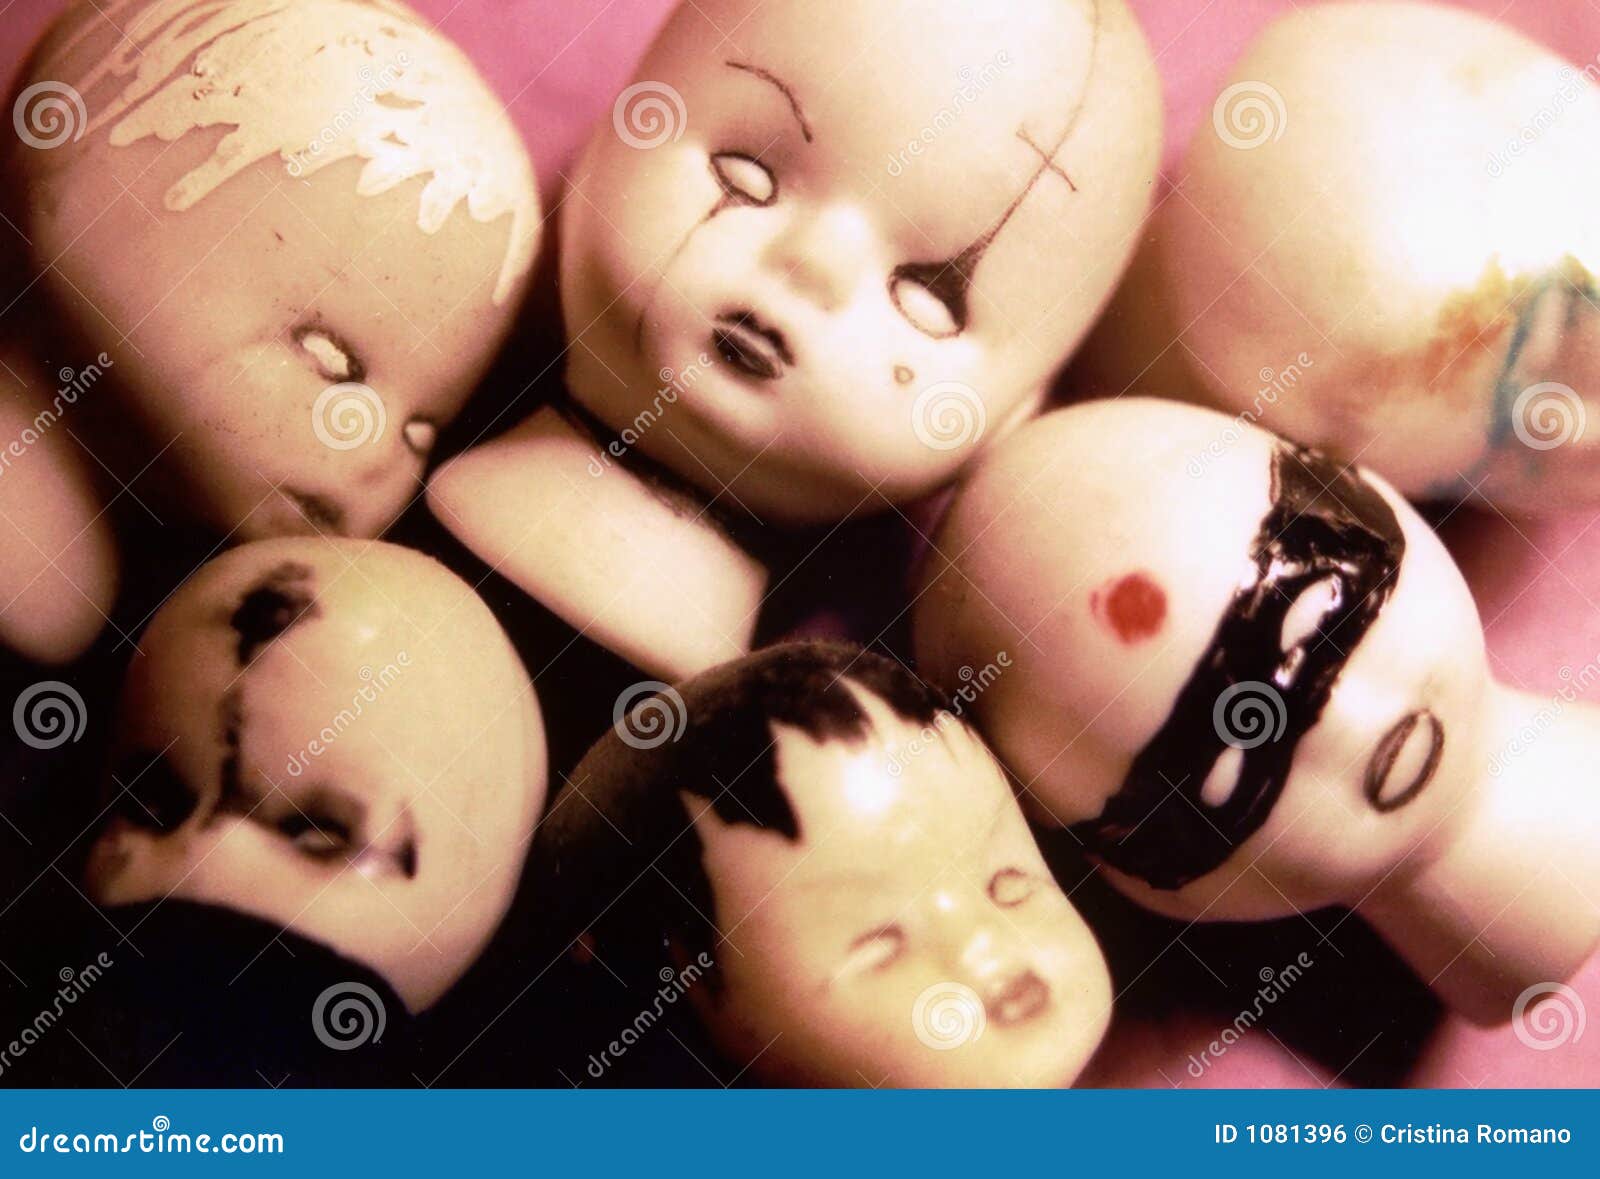 strange dolls